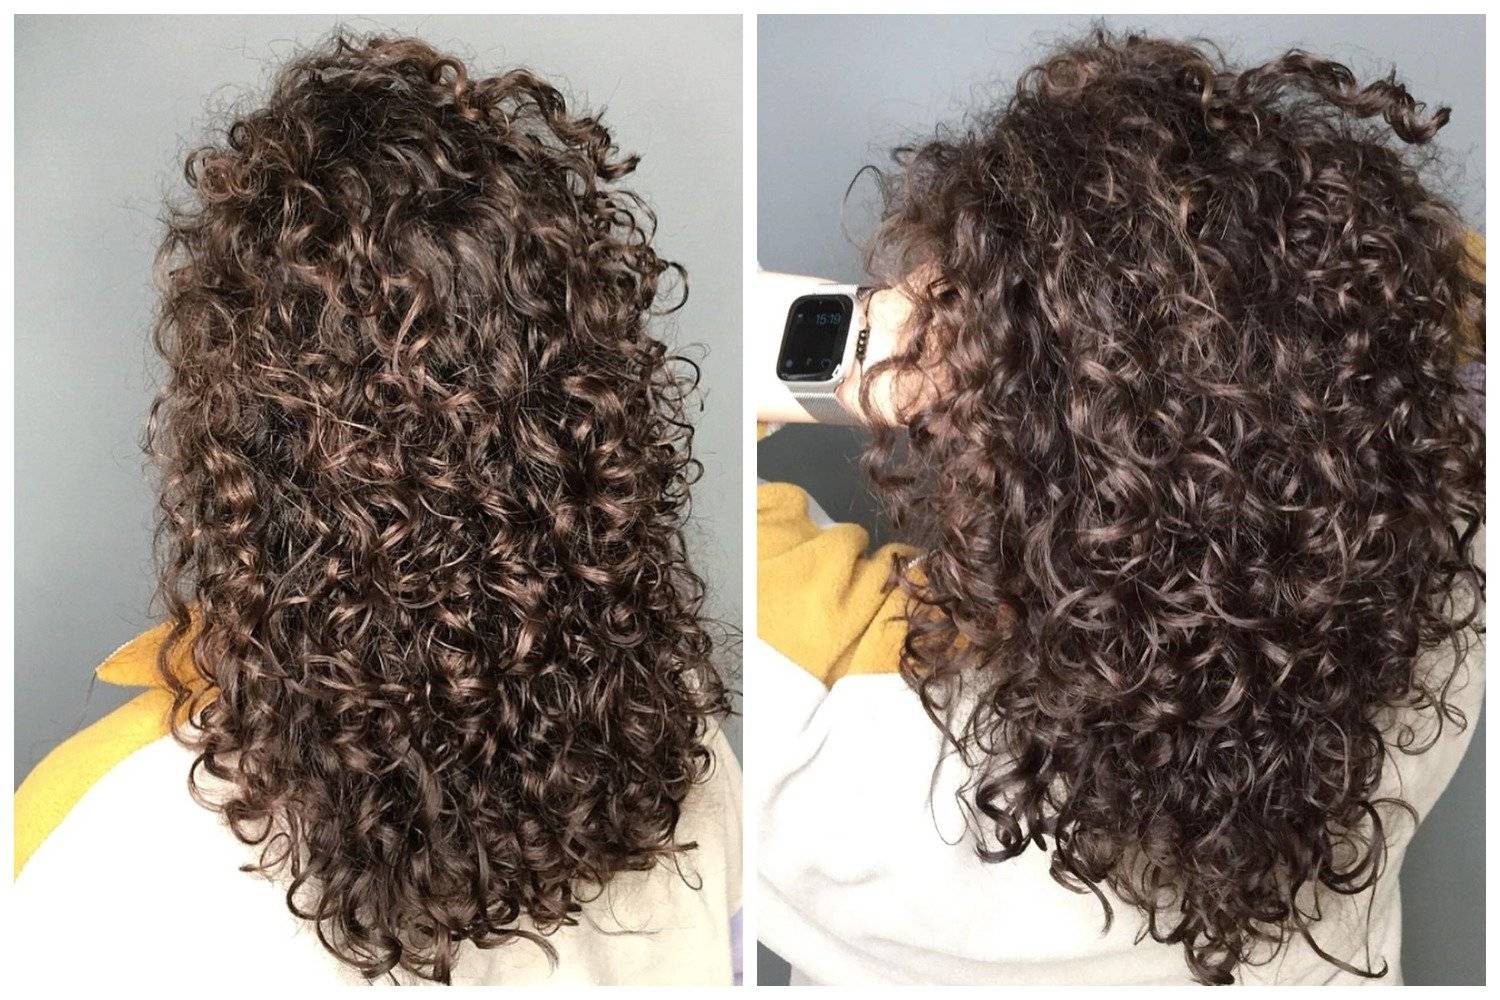 Биозавивка волос - средства и состав, пошаговая инструкция процедуры в домашних условиях, отзывы и фото до и после